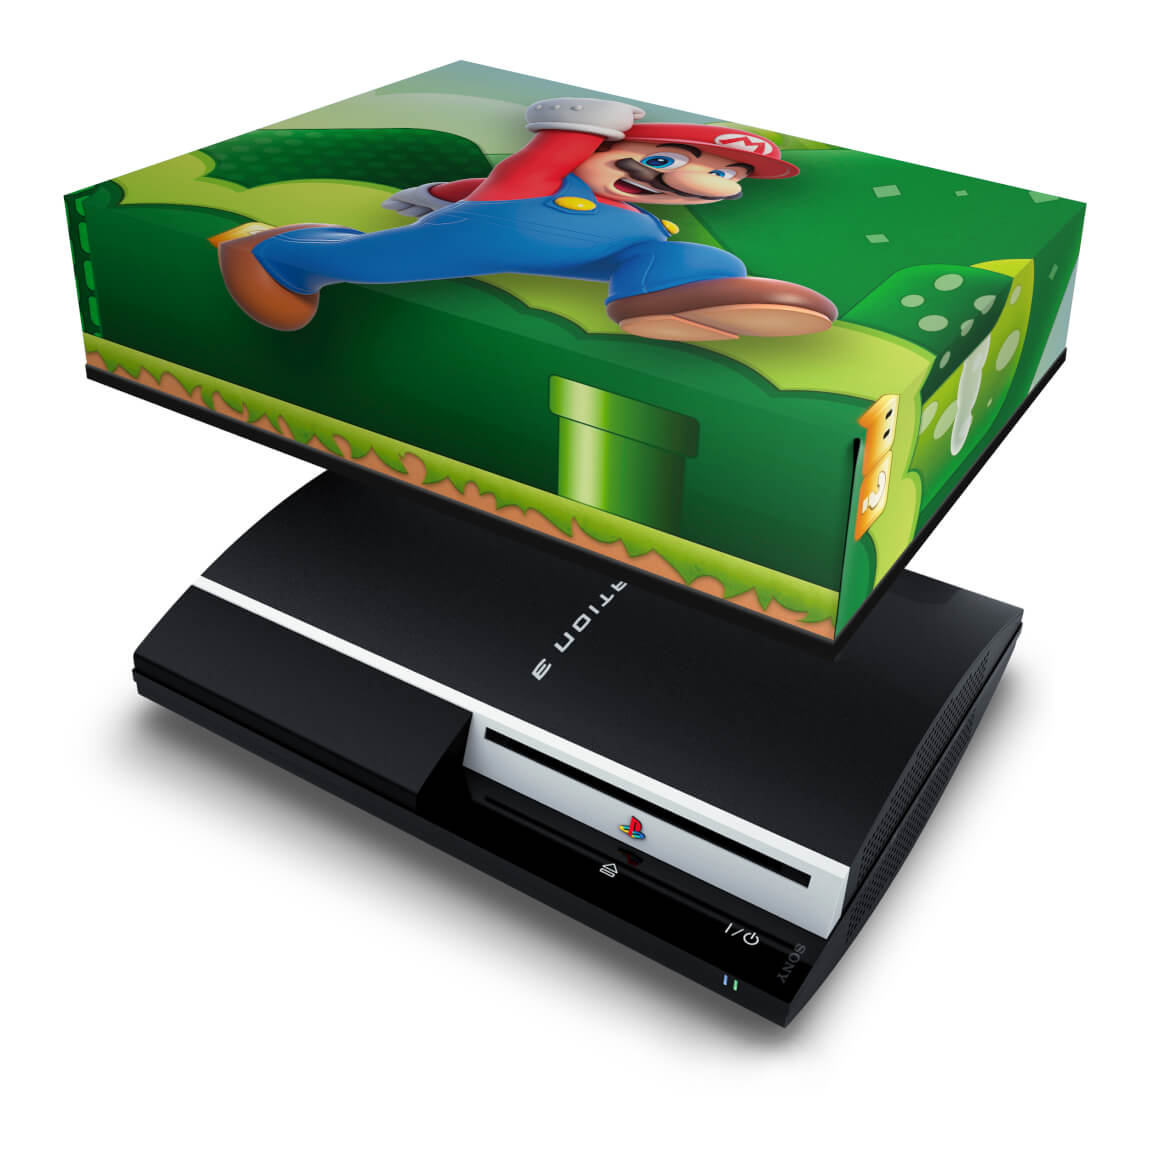 Capa Anti Poeira Xbox 360 Fat - Mario & Luigi em Promoção na